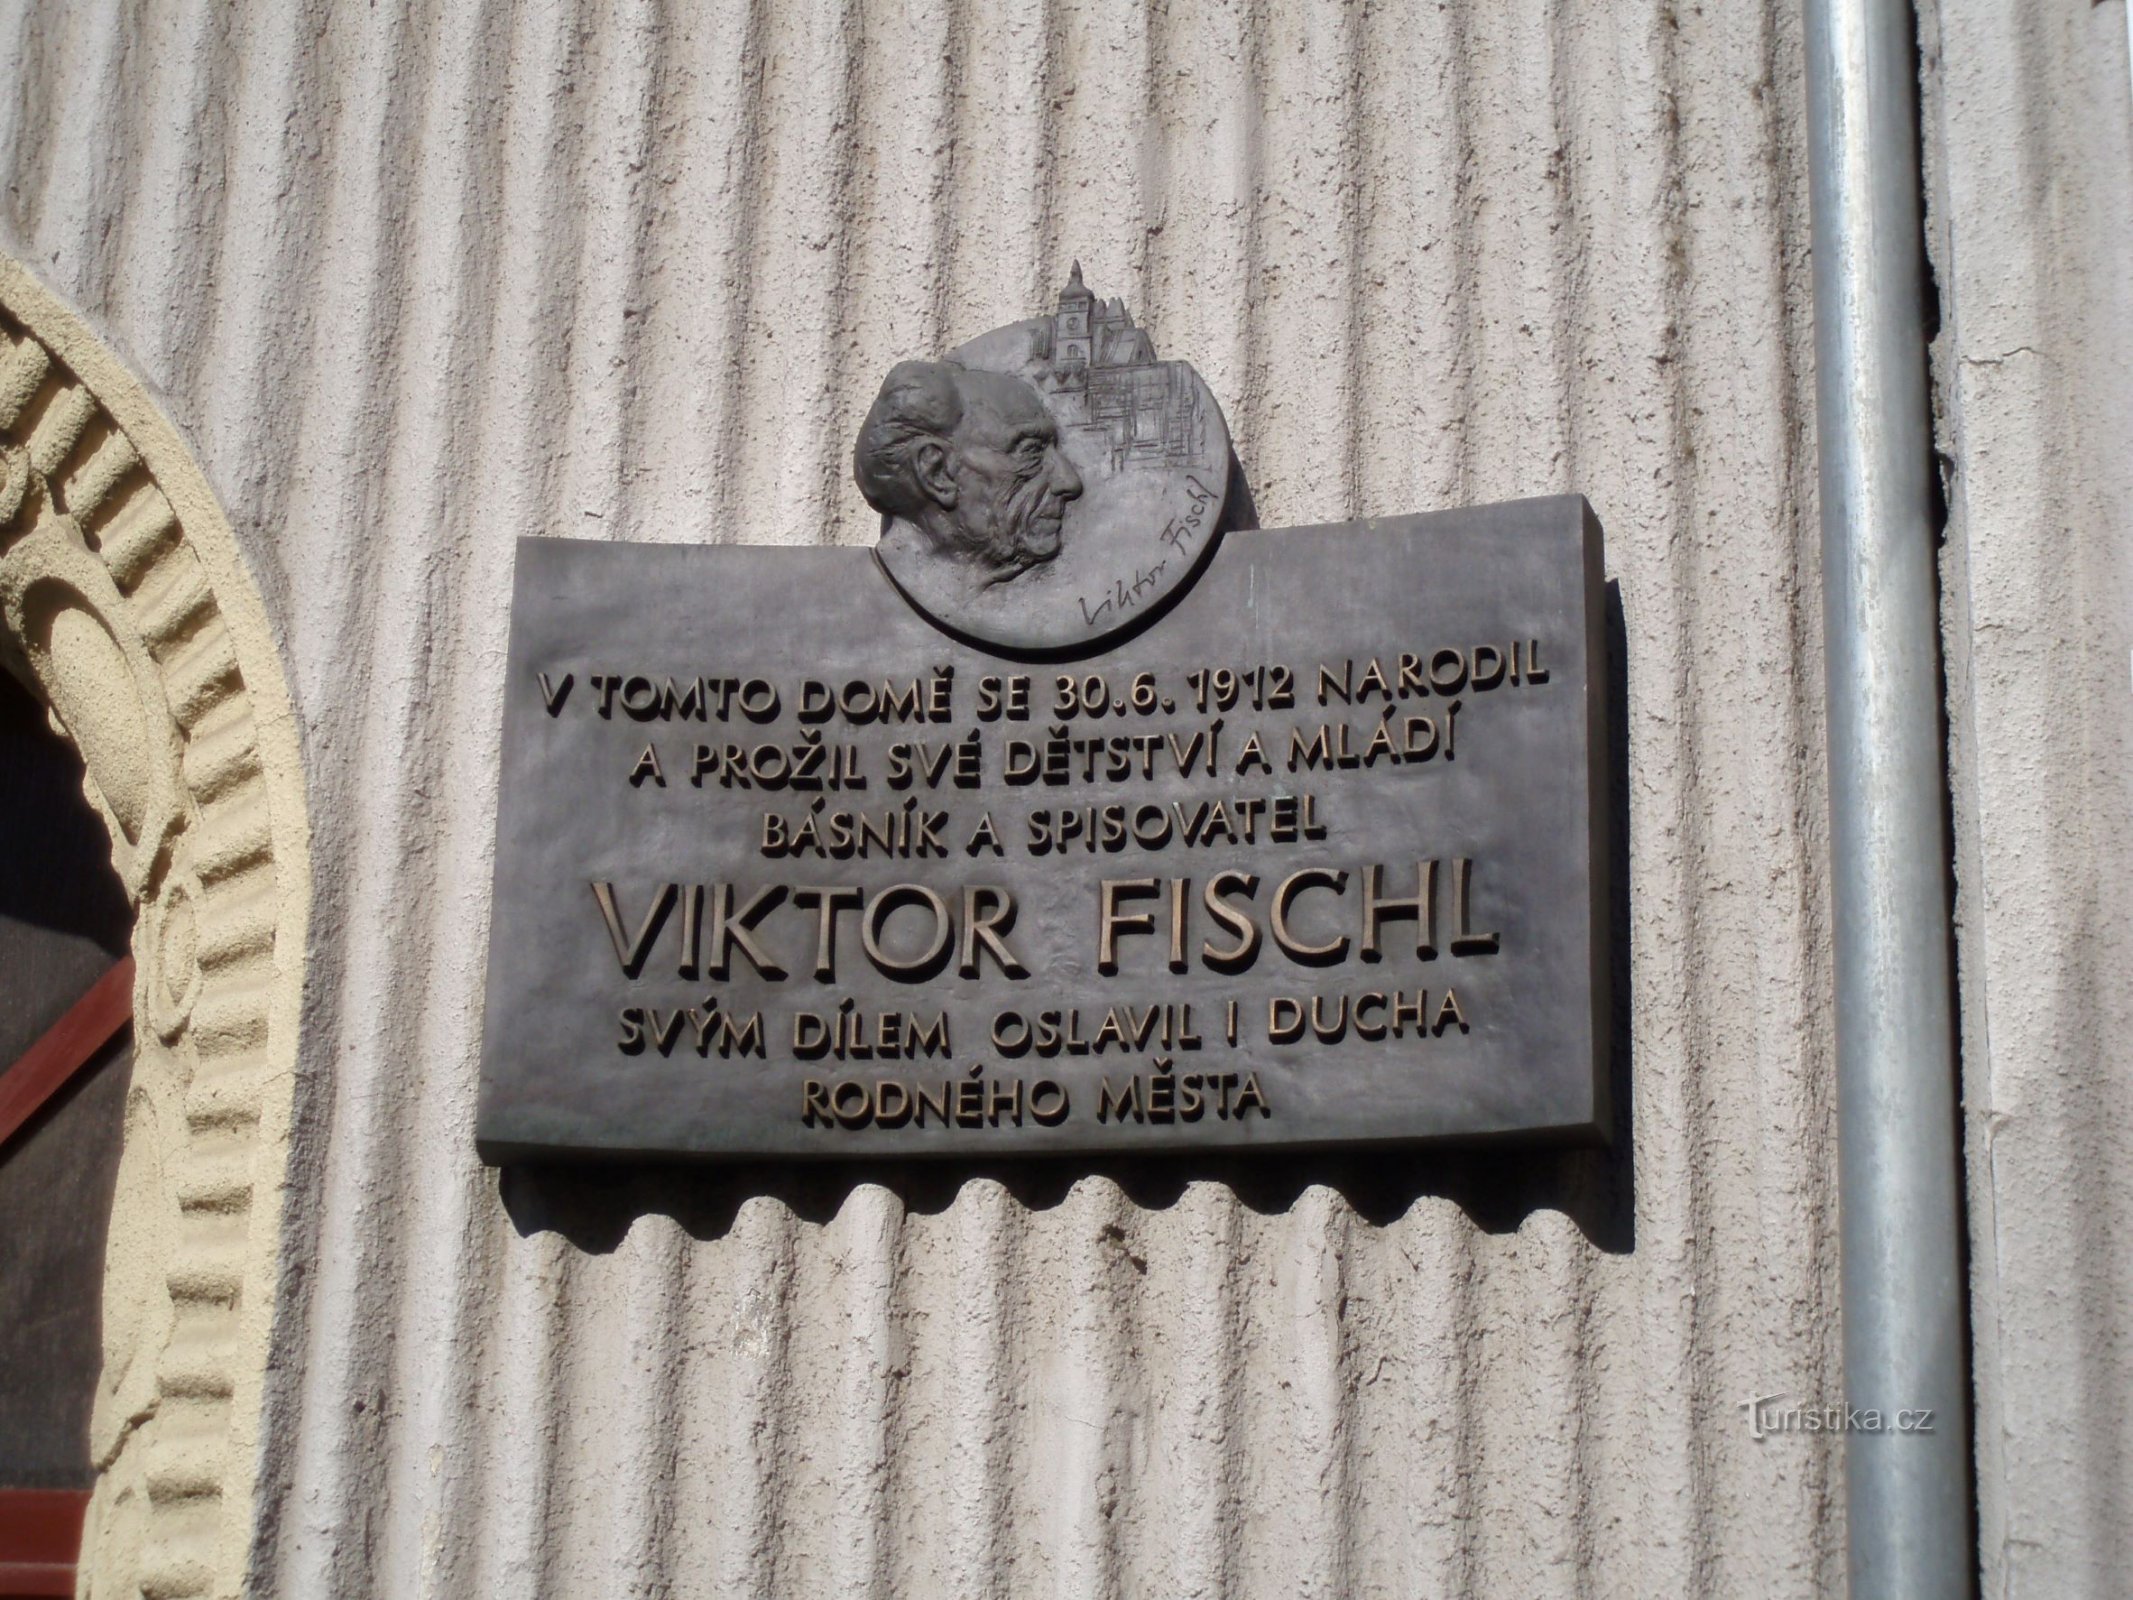 Gedenkplaat bij de geboorteplaats van Viktor Fischl (Hradec Králové, 20.4.2011 april XNUMX)